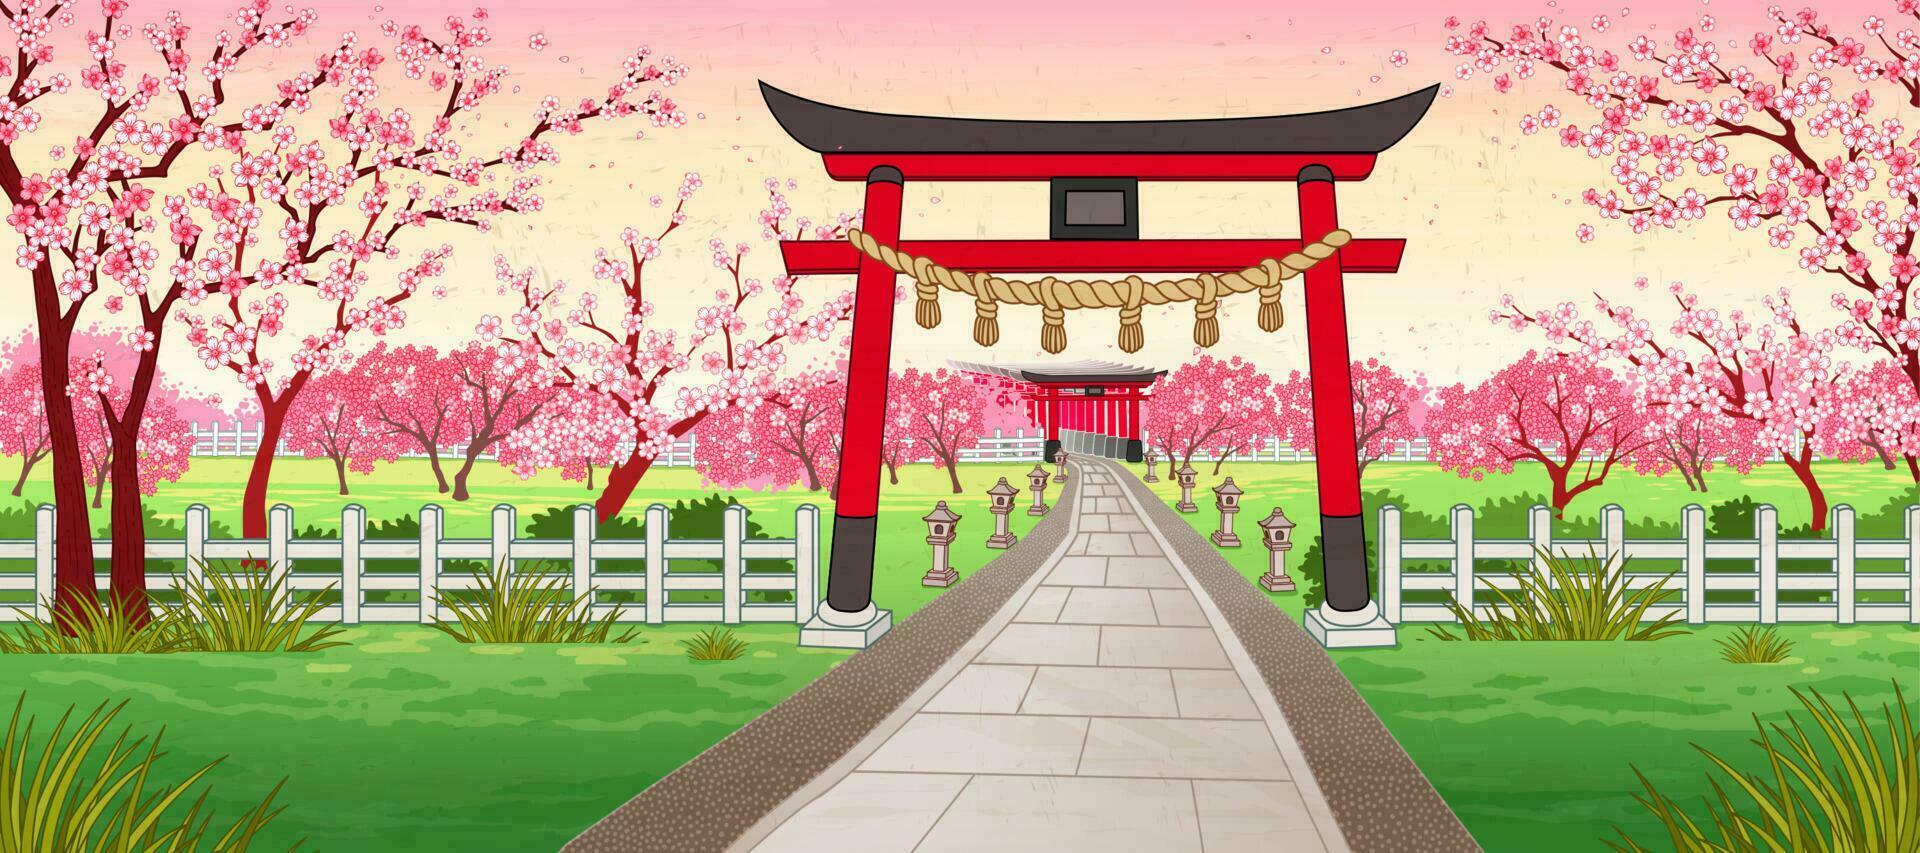 Japan ukiyo-e stijl kers bloesem tuin met traditioneel Japans altaar poort, torii vector